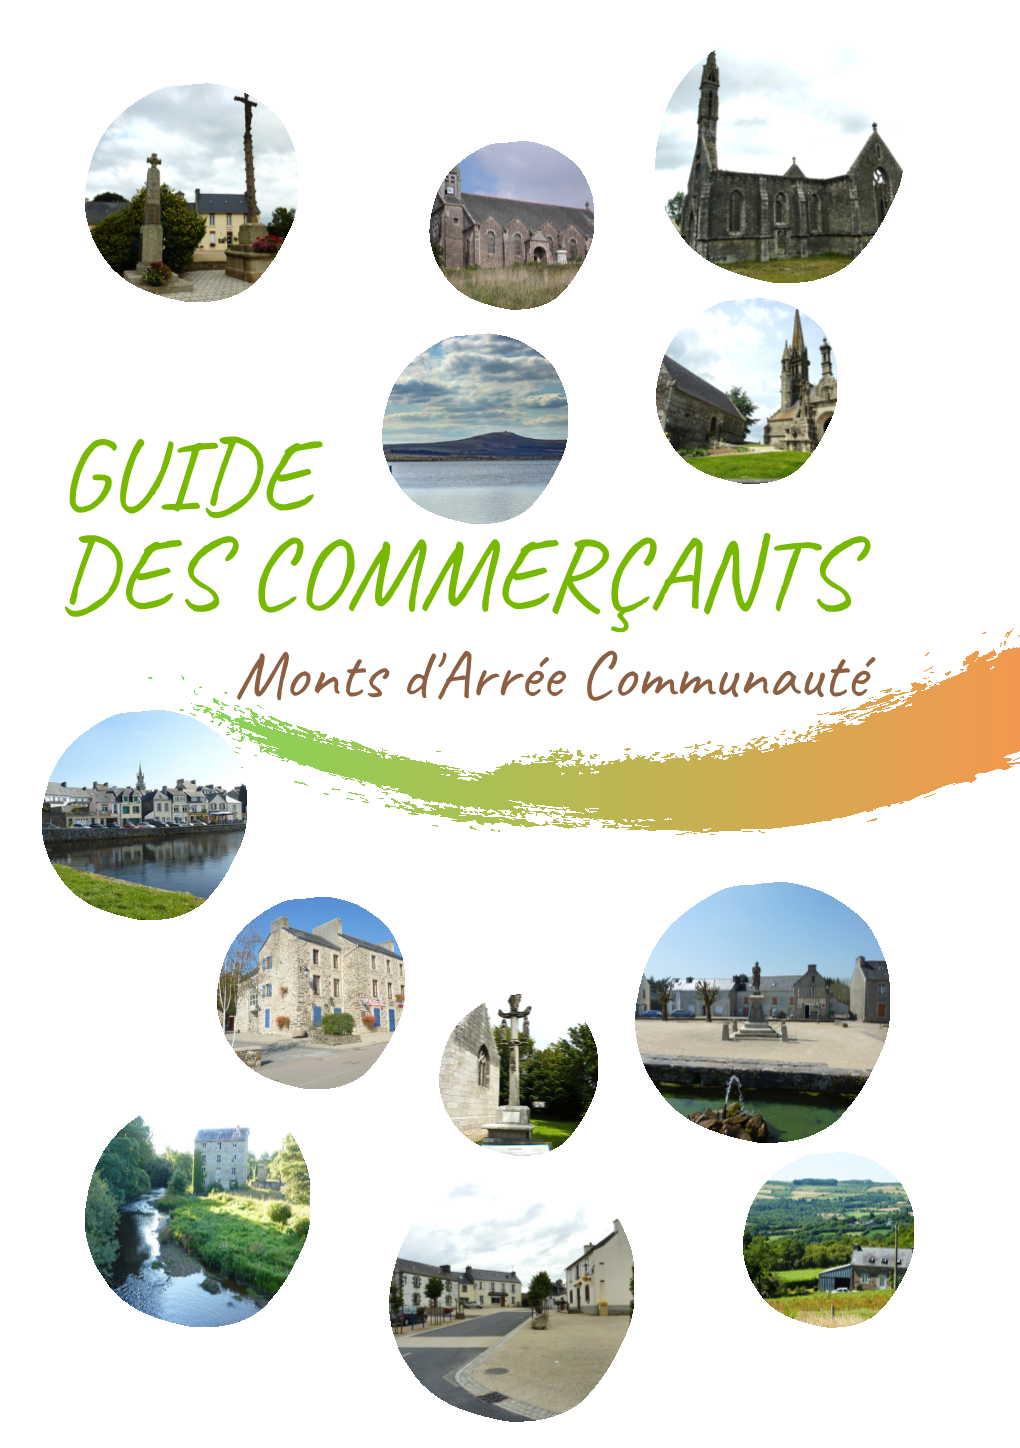 Guide Des Commerçants.Pdf